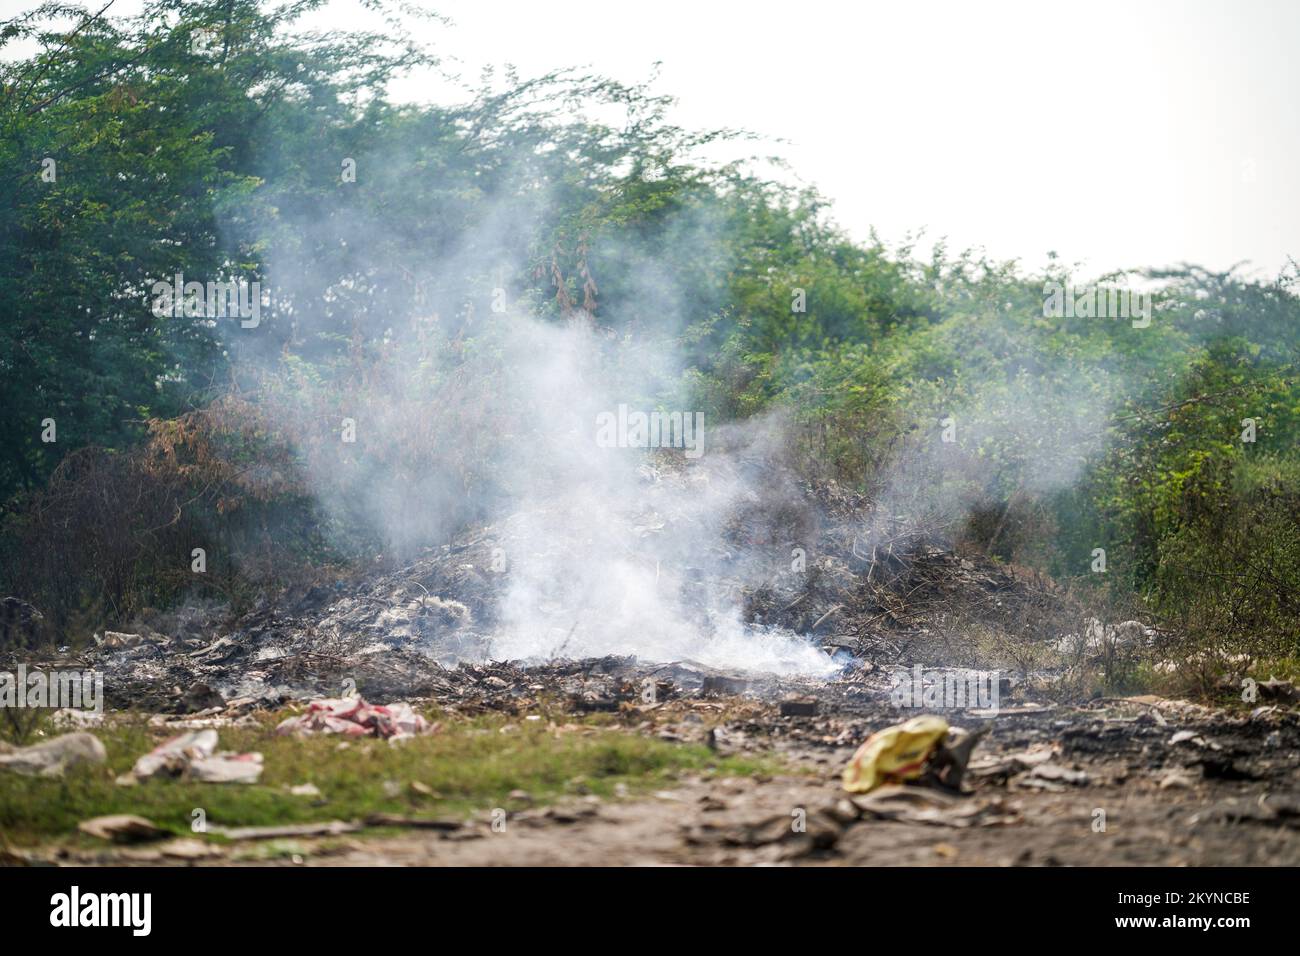 Mülldeponie und Brandstelle verursacht Luftverschmutzung durch Rauch, Verschmutzungskontrolltag, Landverschmutzung, Raipur, indien, Verschmutzungskonzept Stockfoto